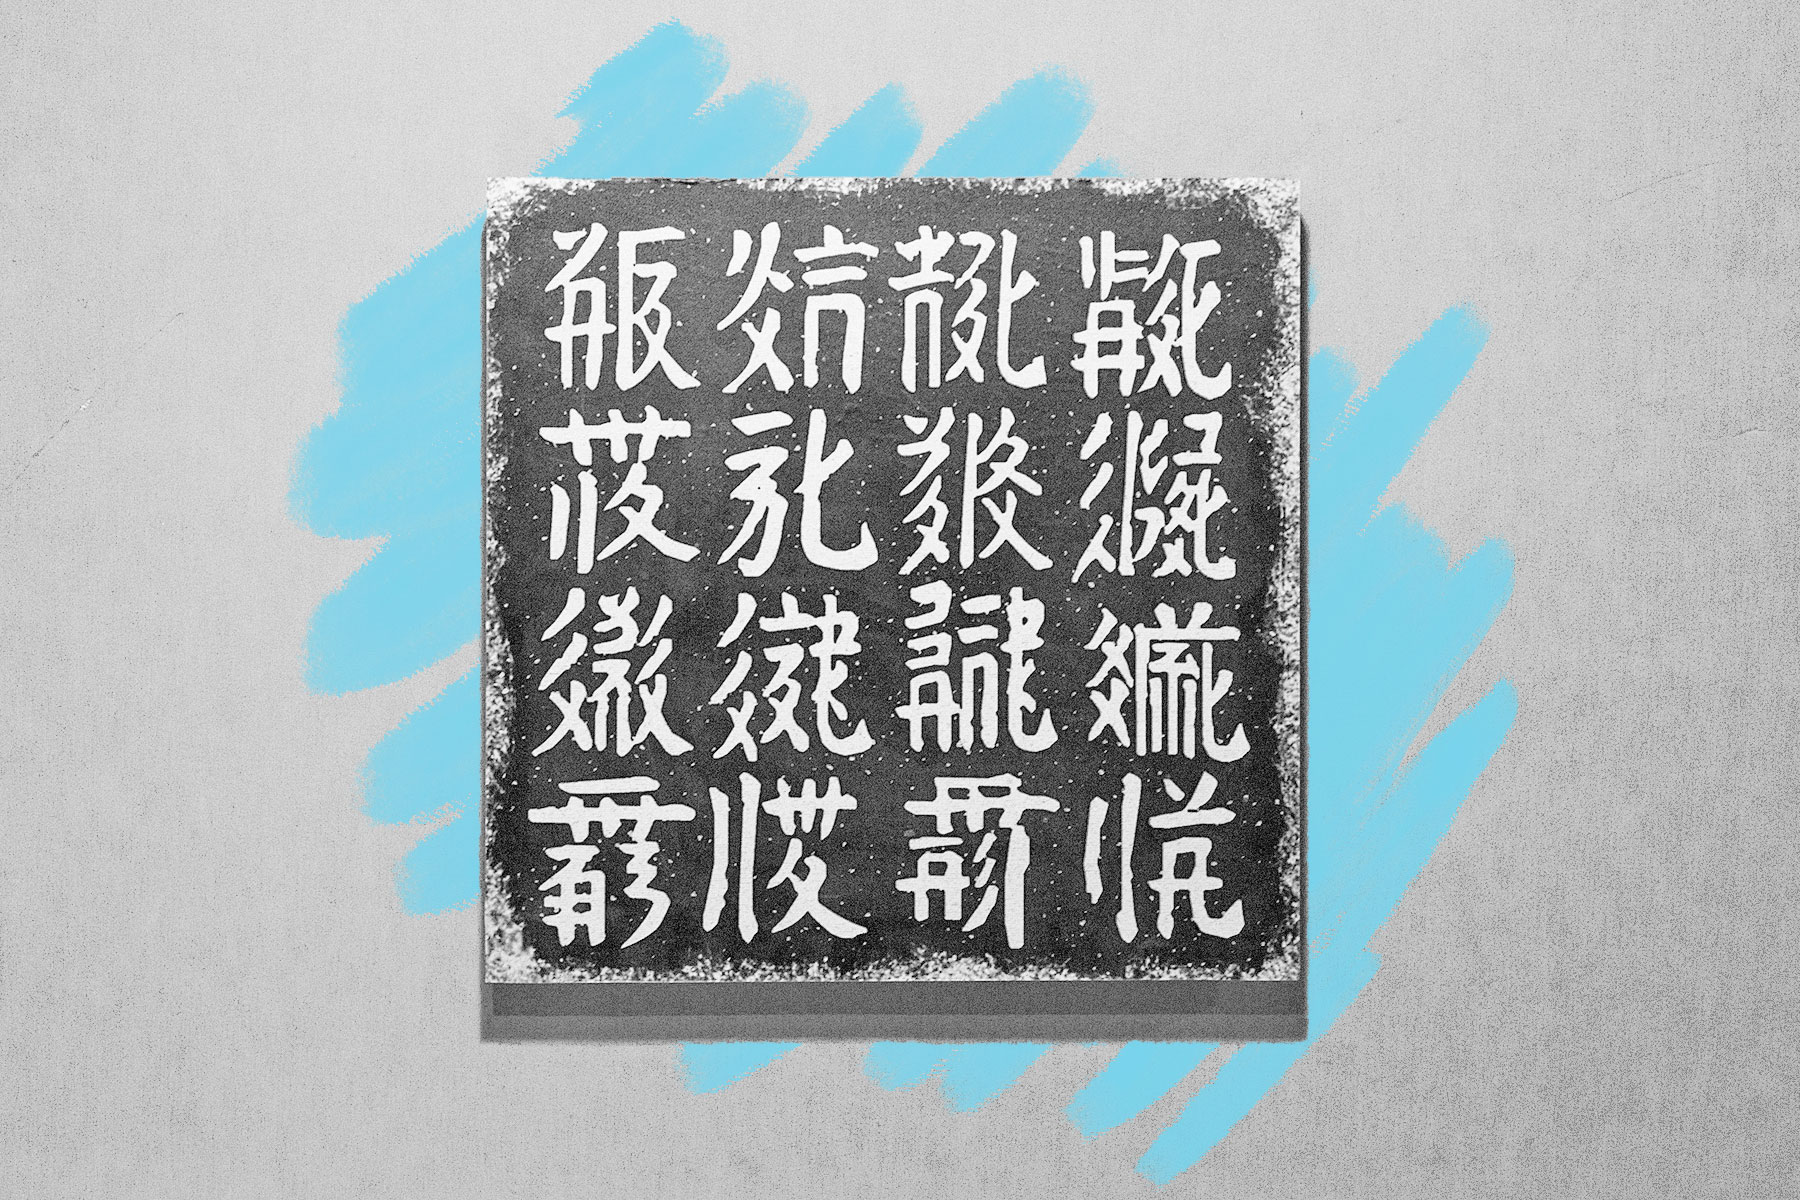 Tangut script